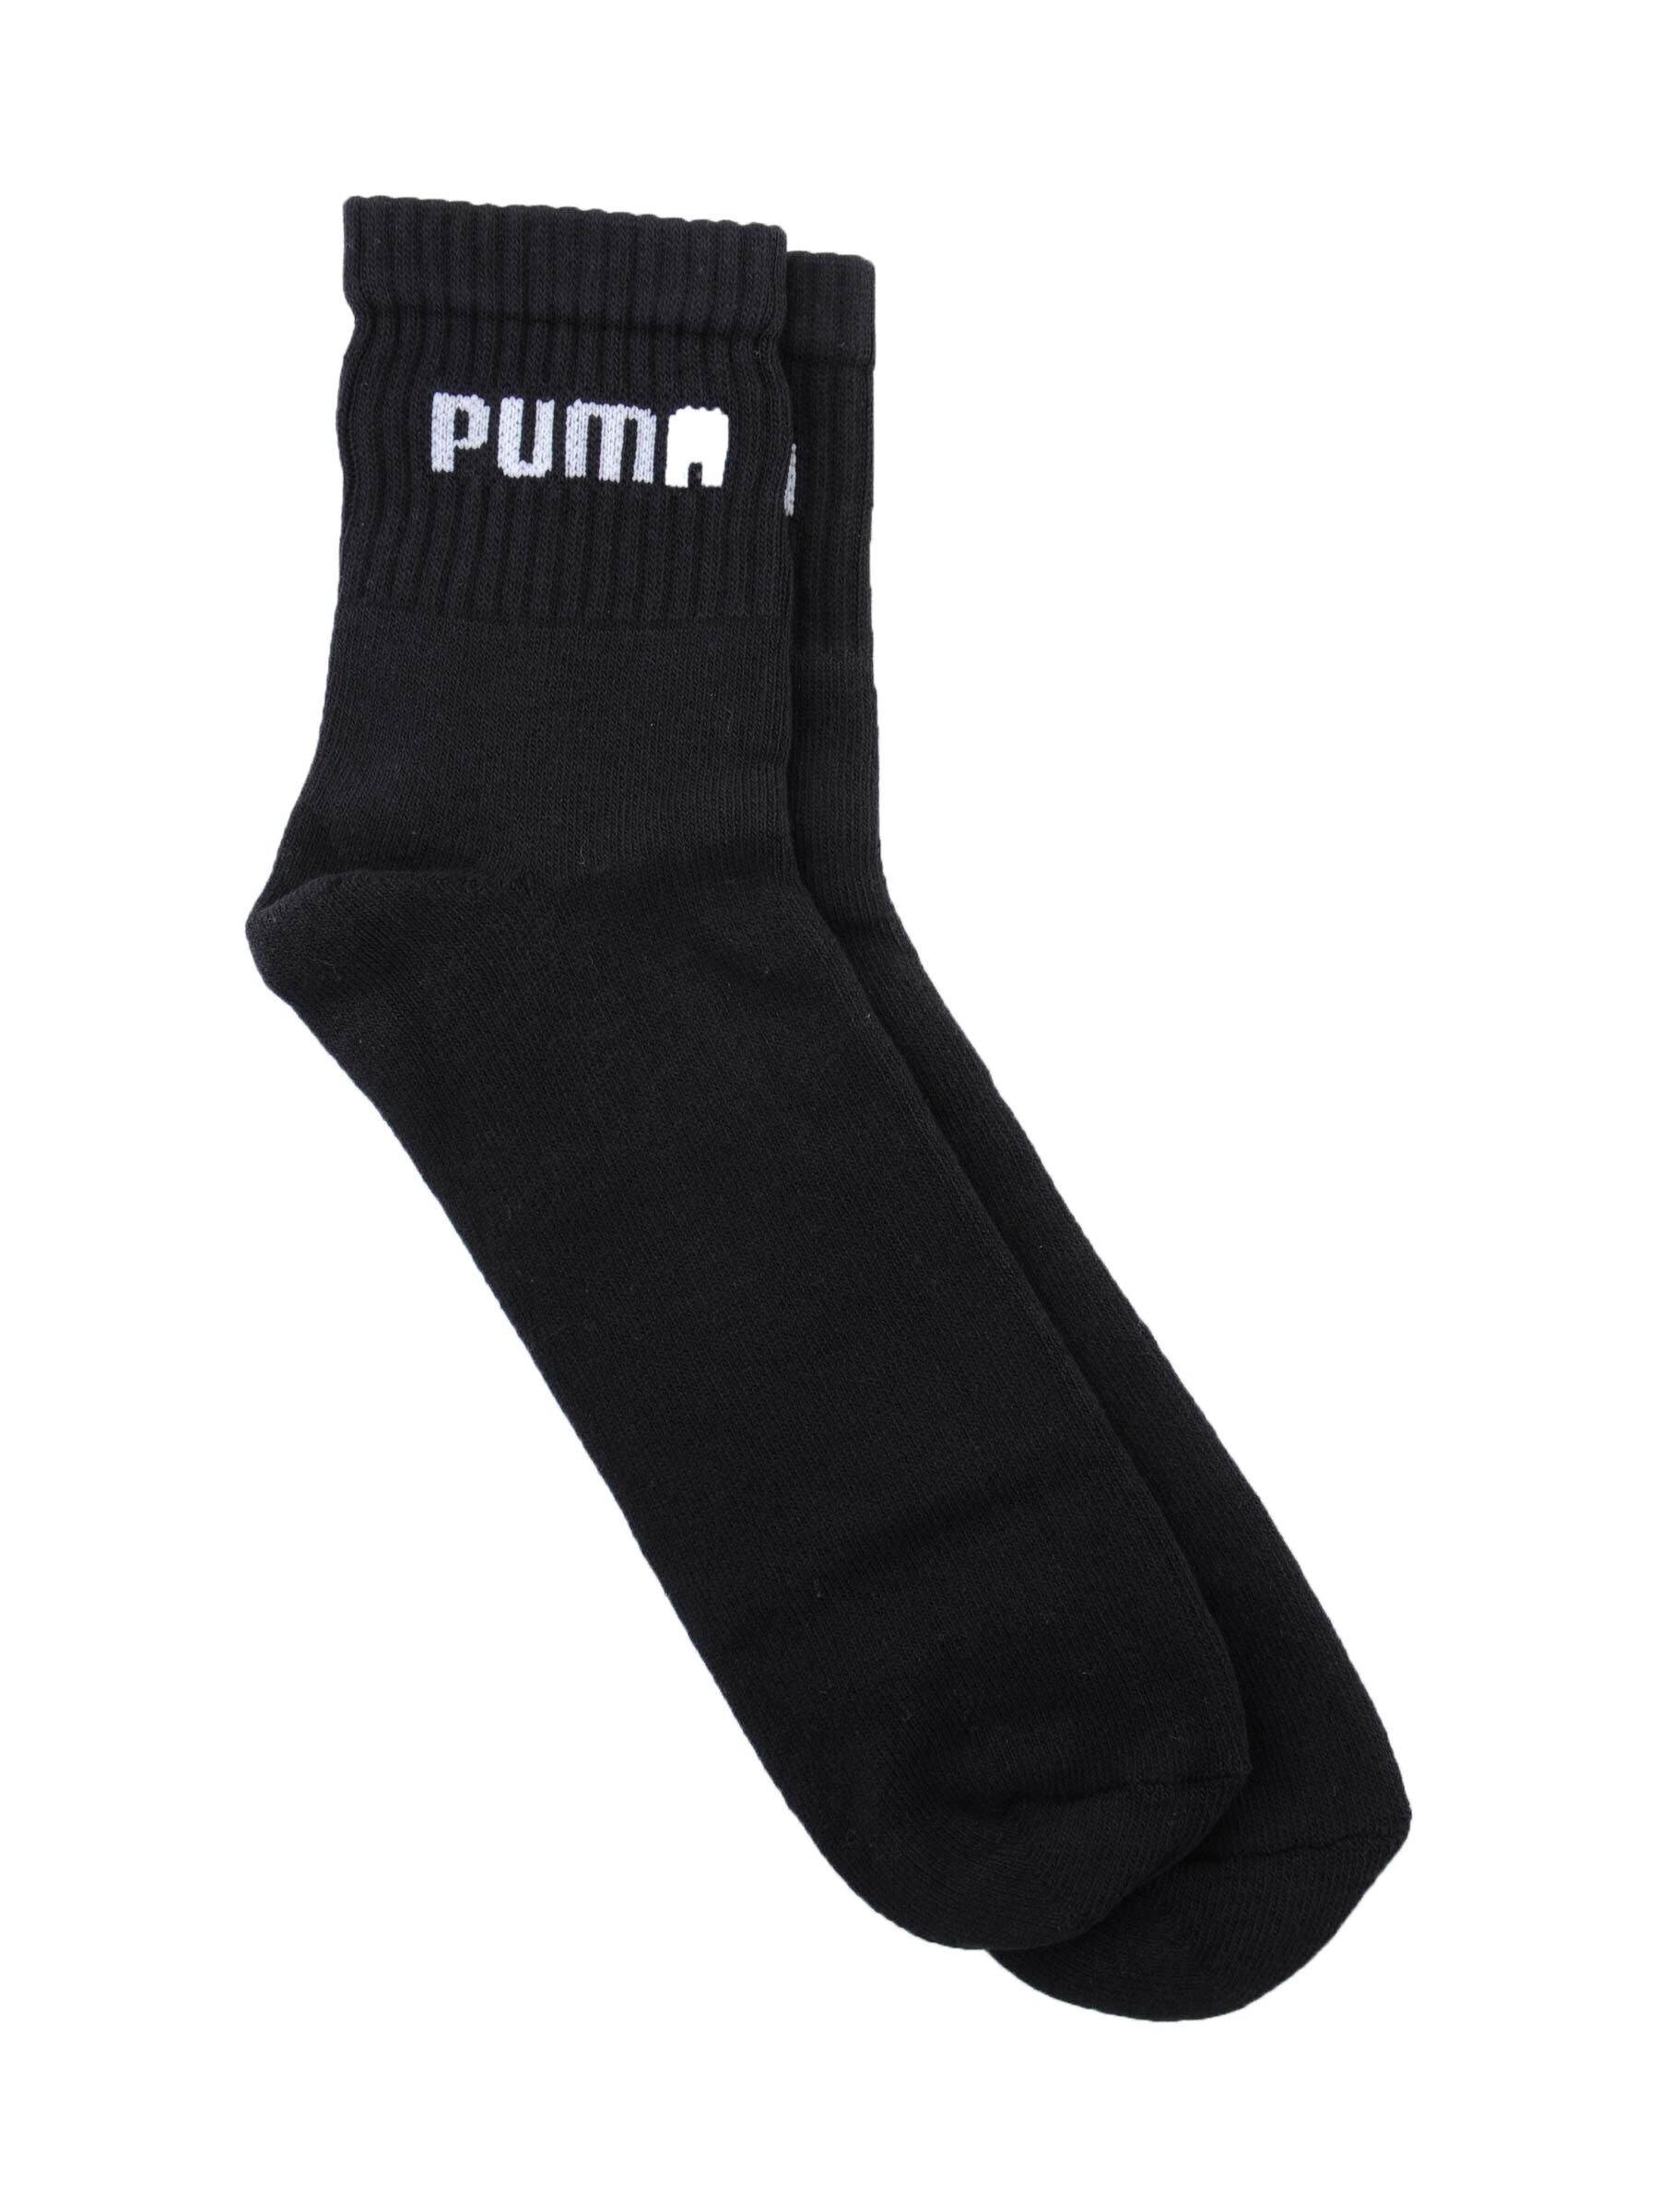 Puma Men Sports Black Socks